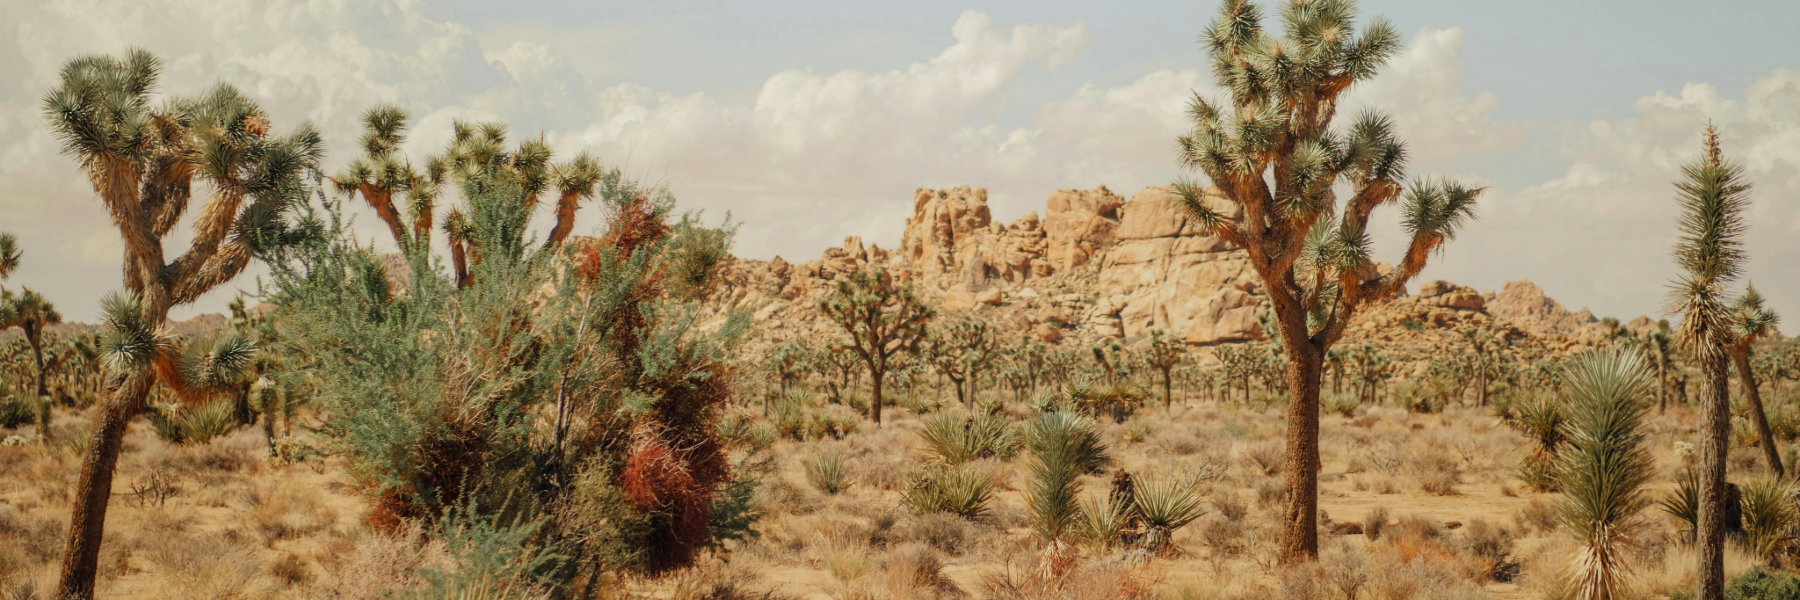 Joshua trees in the desert pexels